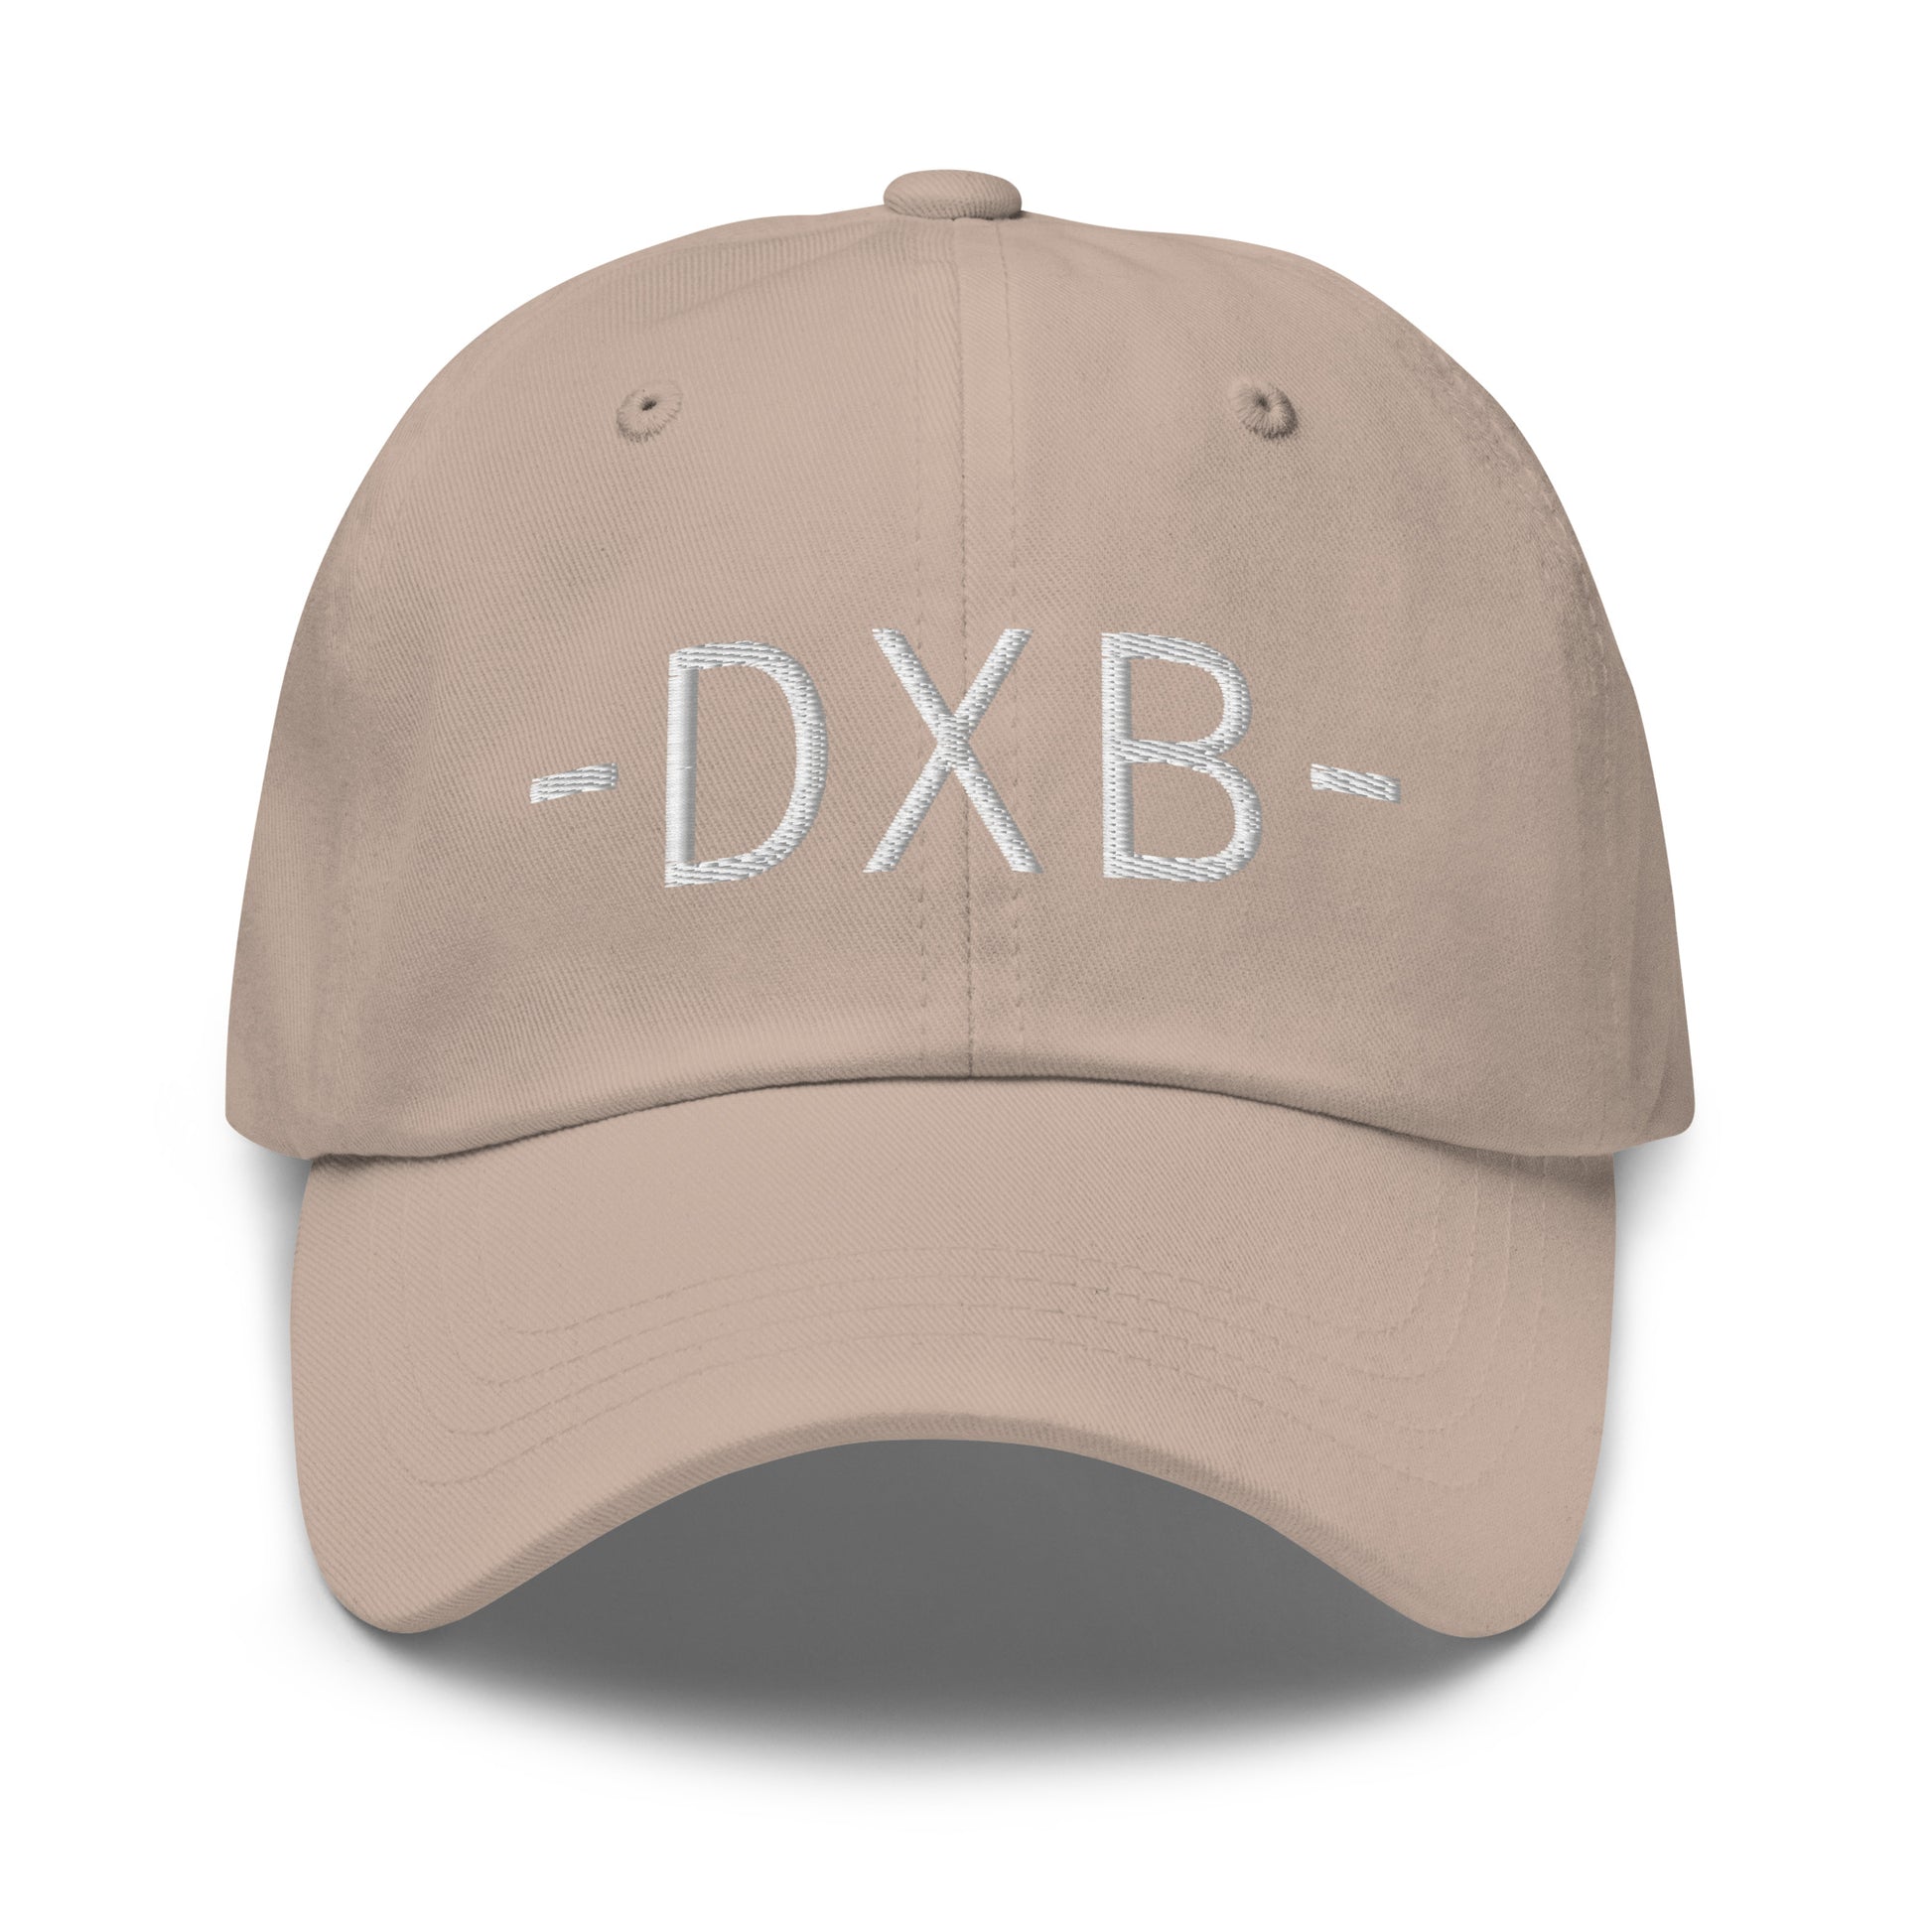 Souvenir Baseball Cap - White • DXB Dubai • YHM Designs - Image 23